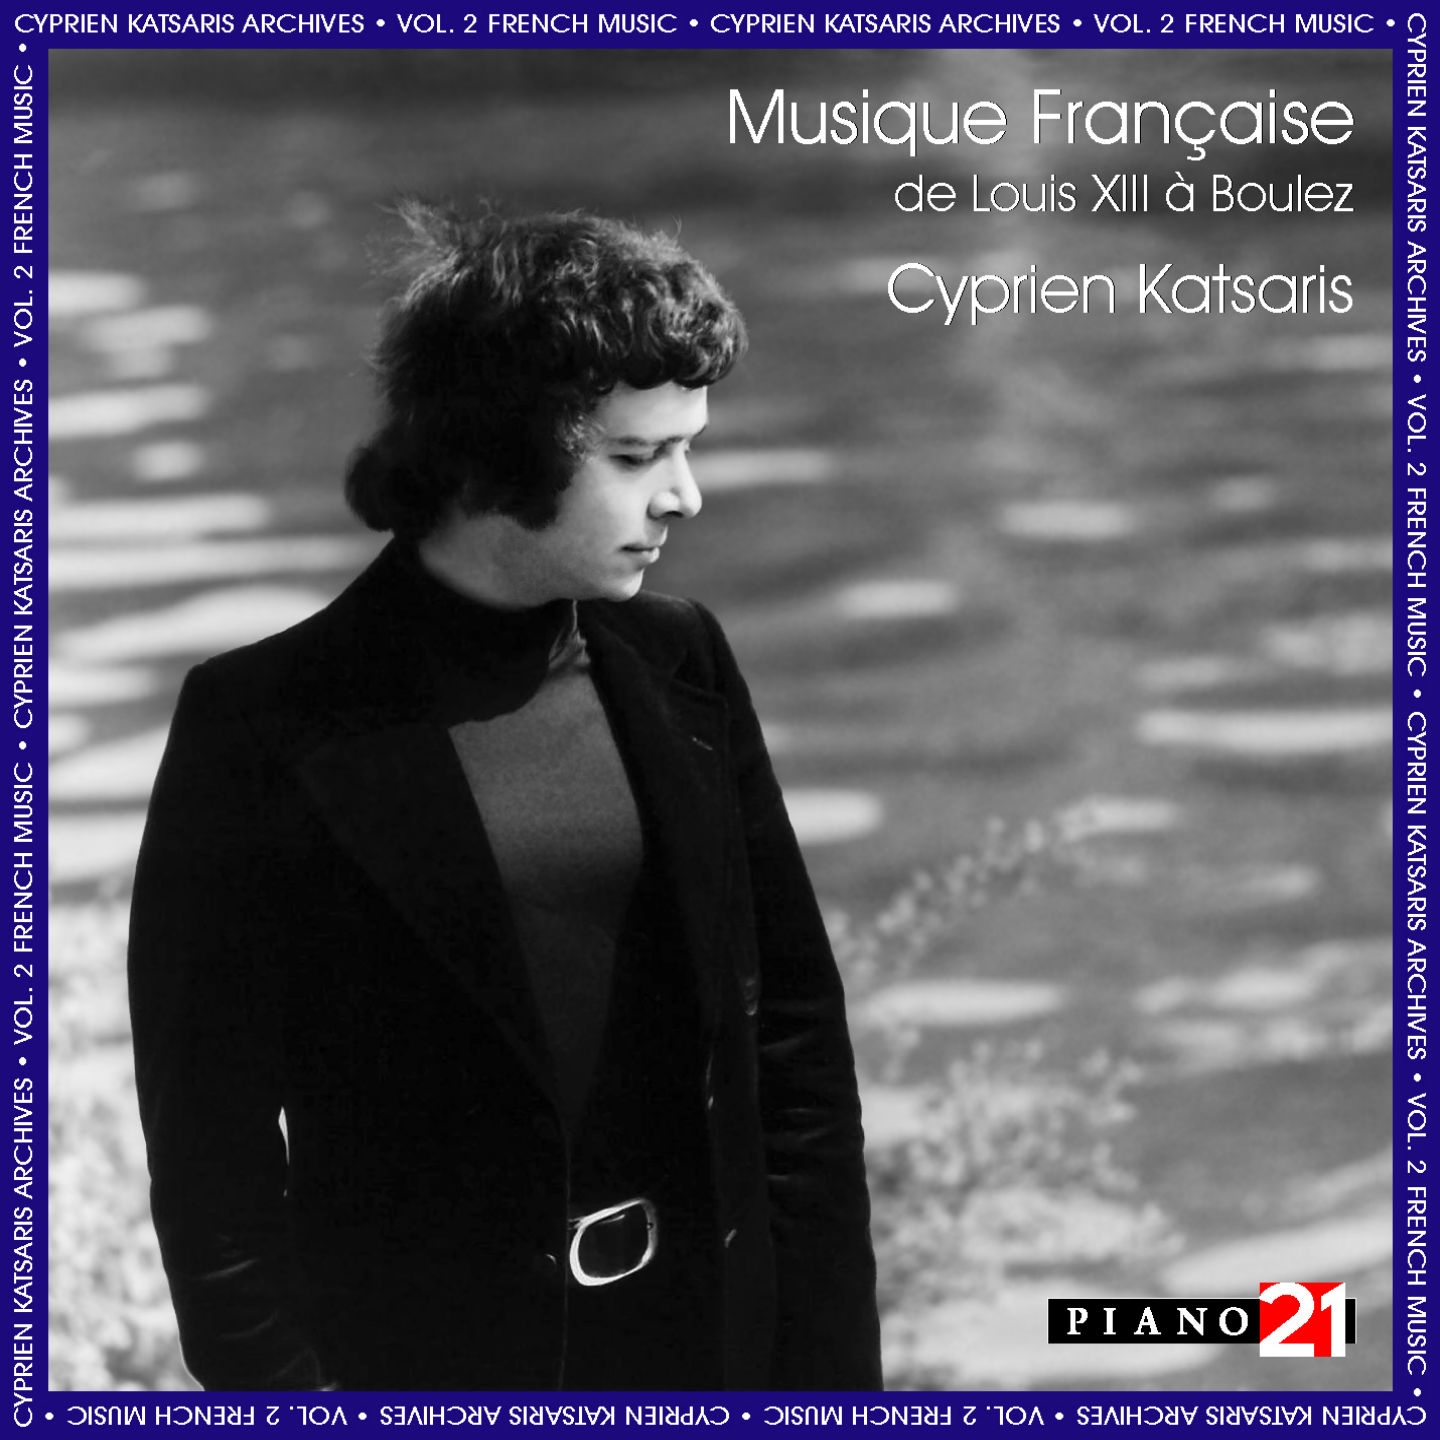 French Music, Vol. 2: Satie, Ravel, Poulenc, Messiaen, Boulez... (Cyprien Katsaris Archives, World Premiere Recordings)